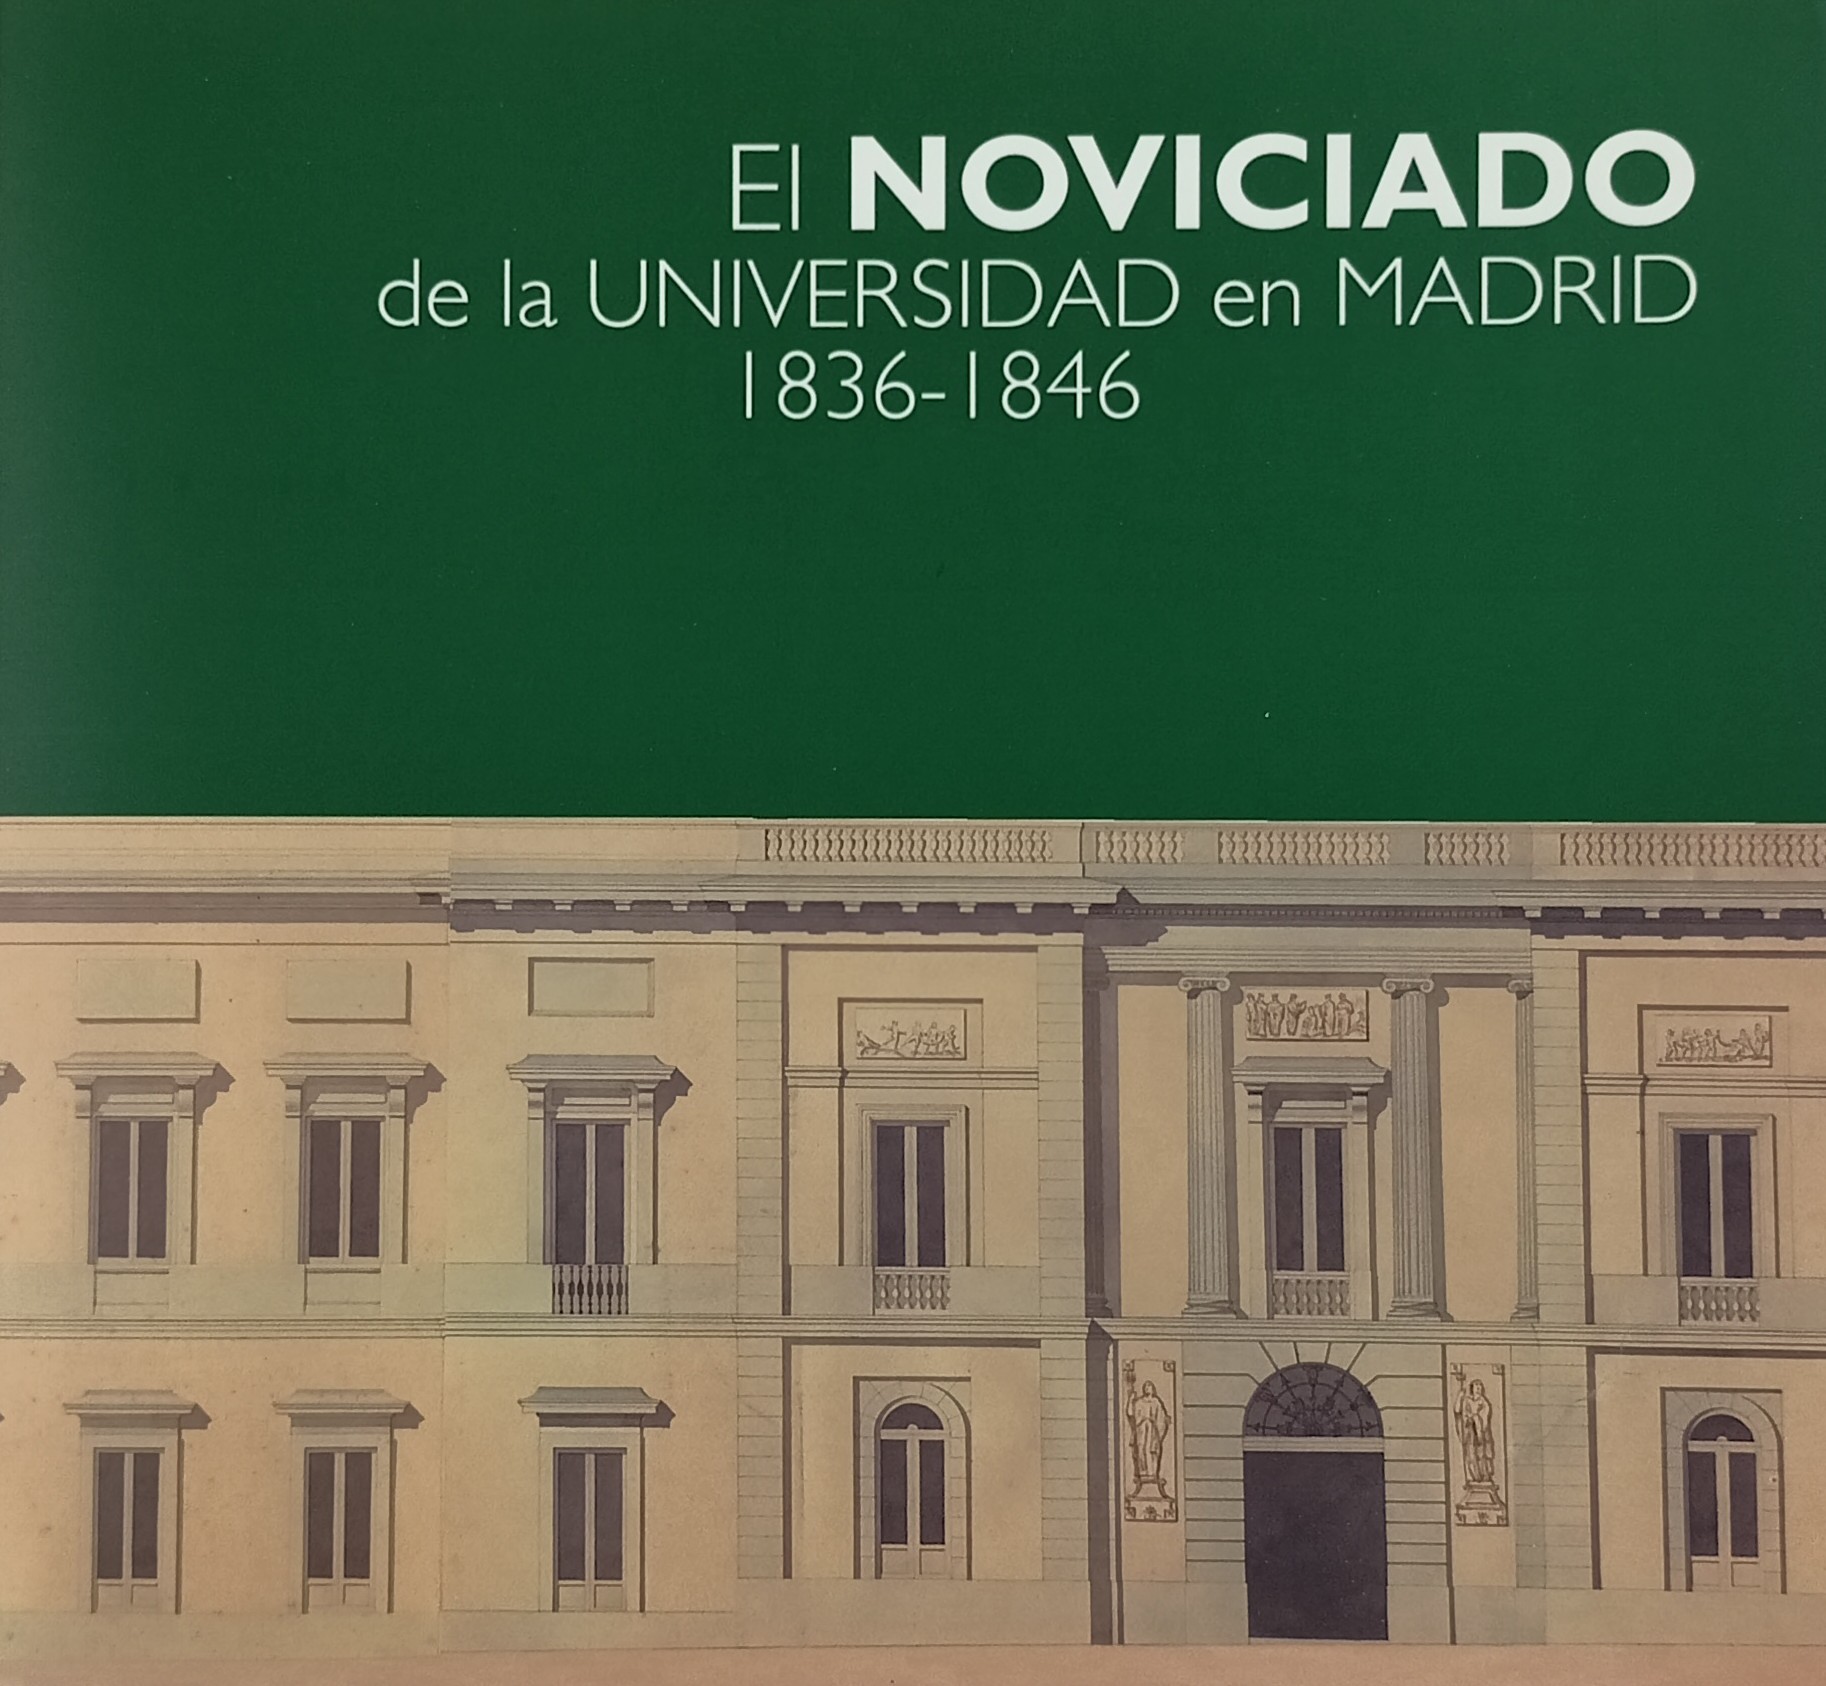 El Noviciado de la Universidad en Madrid: 1836-1846